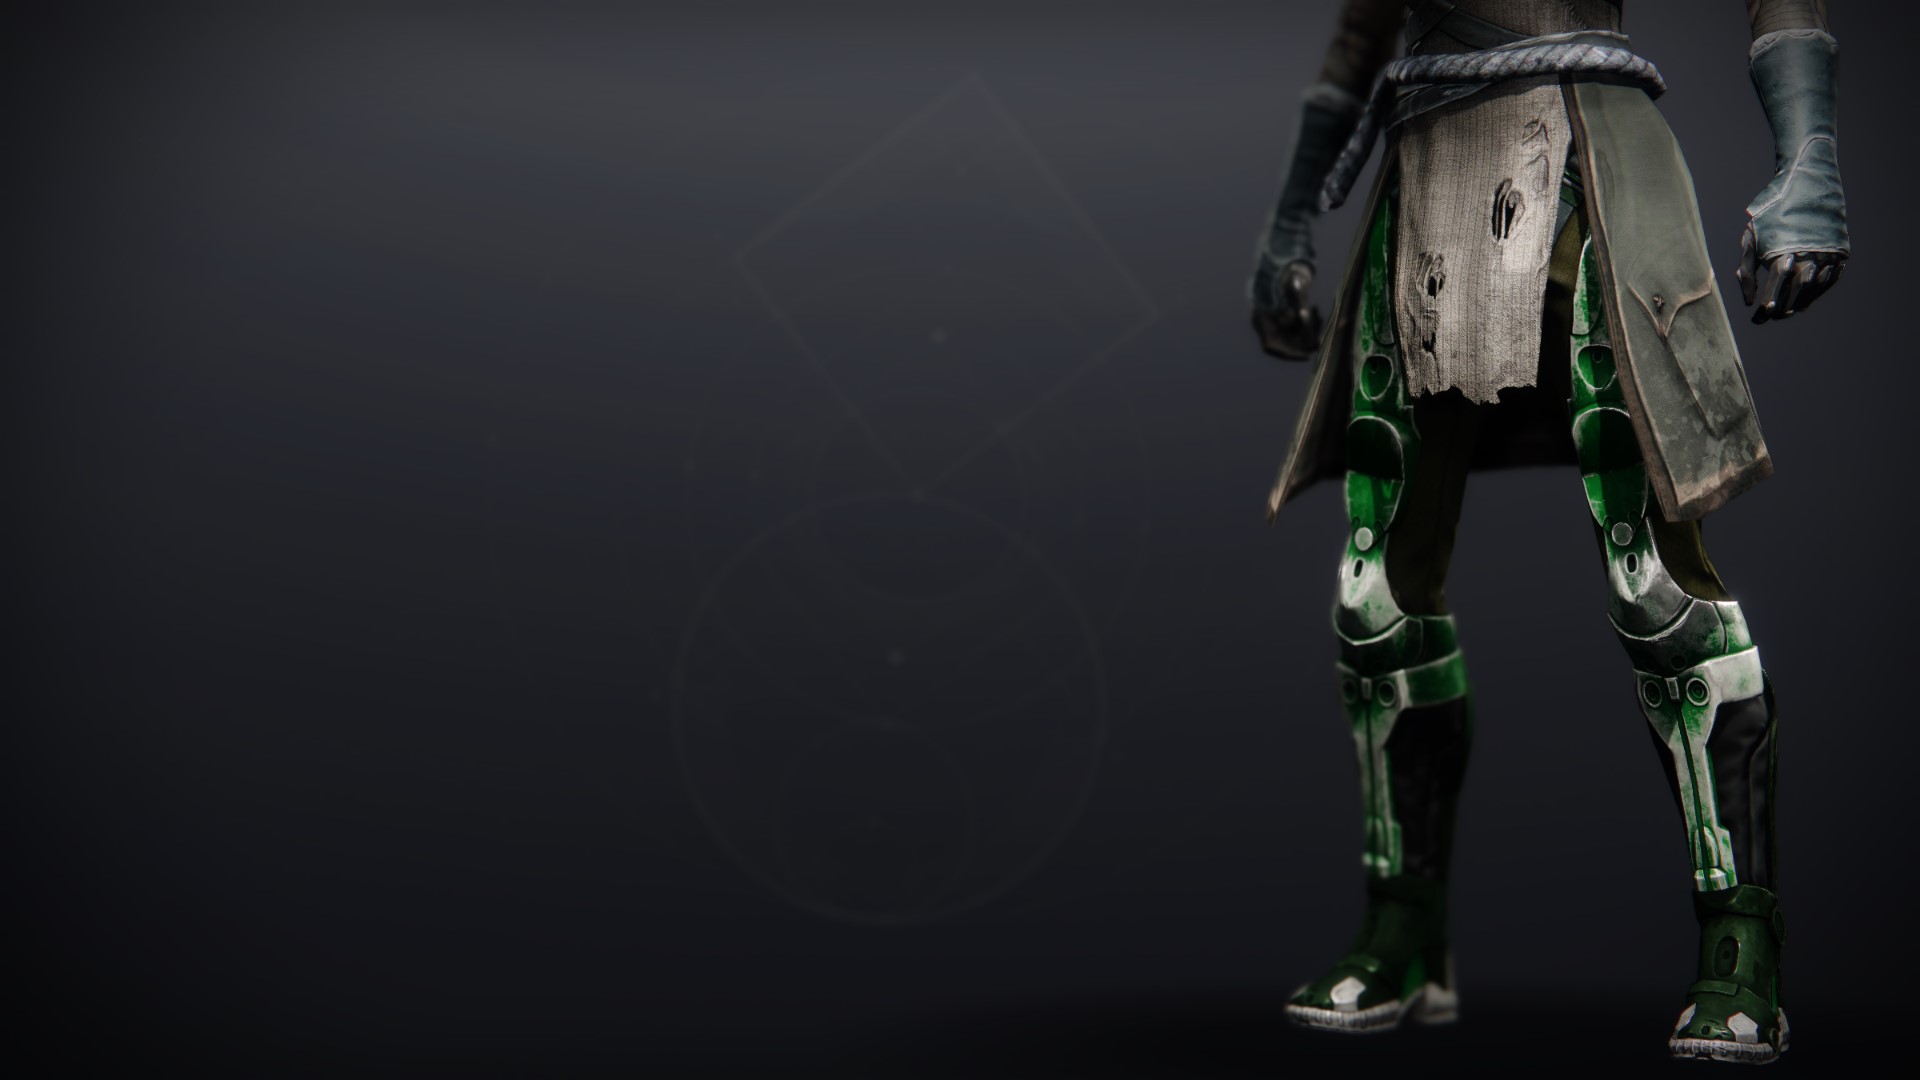 Eidolon Pursuant Pants - Destiny 2 Legendary Leg Armor - Possible 